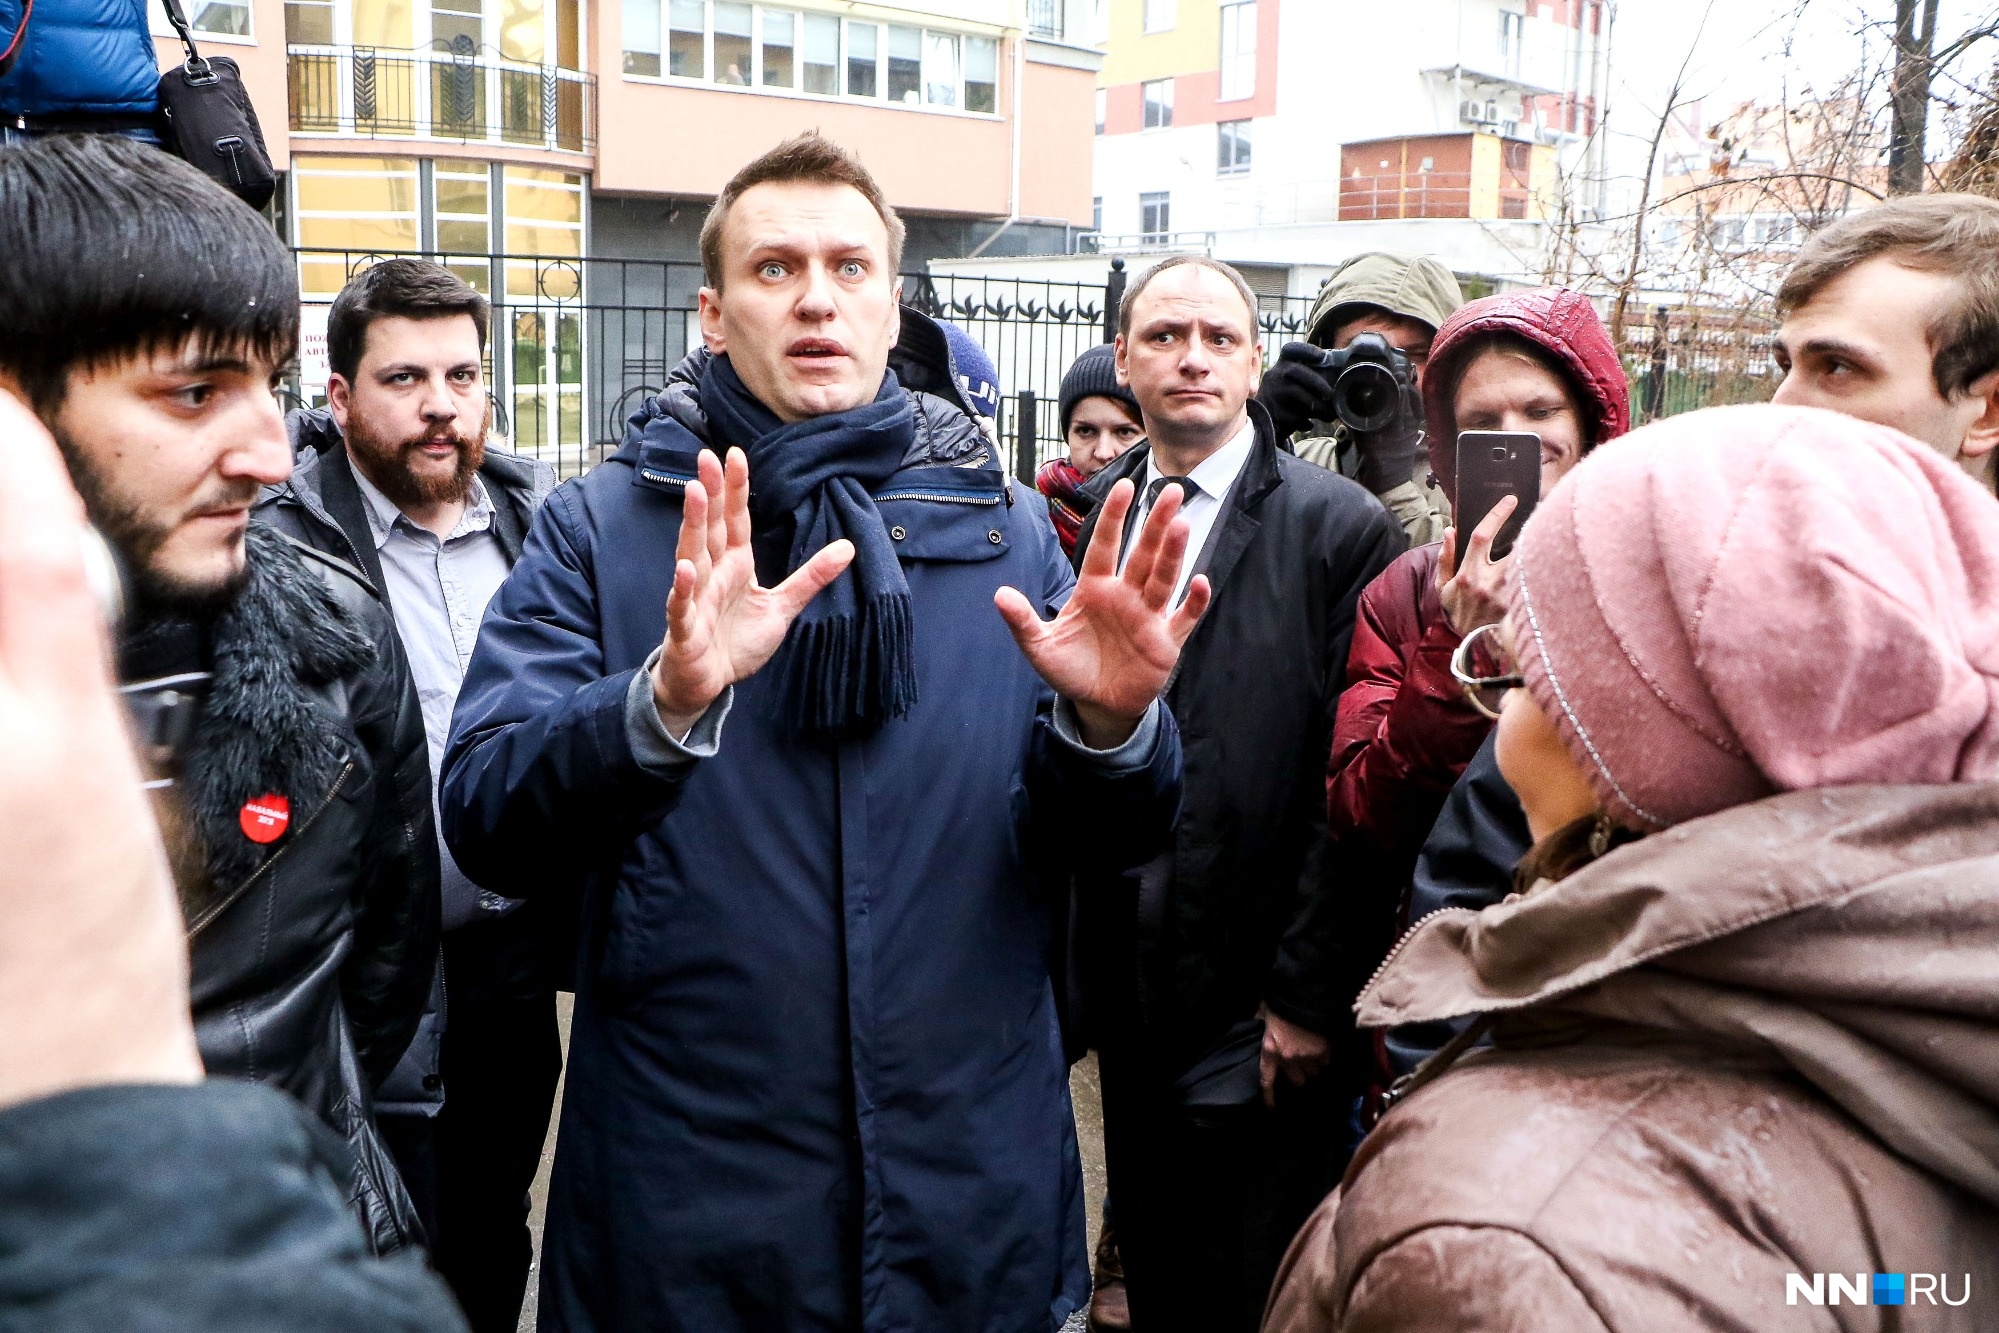 Глава Нижнего Новгорода назвала призывы Навального непонятными, невменяемыми и неадекватными